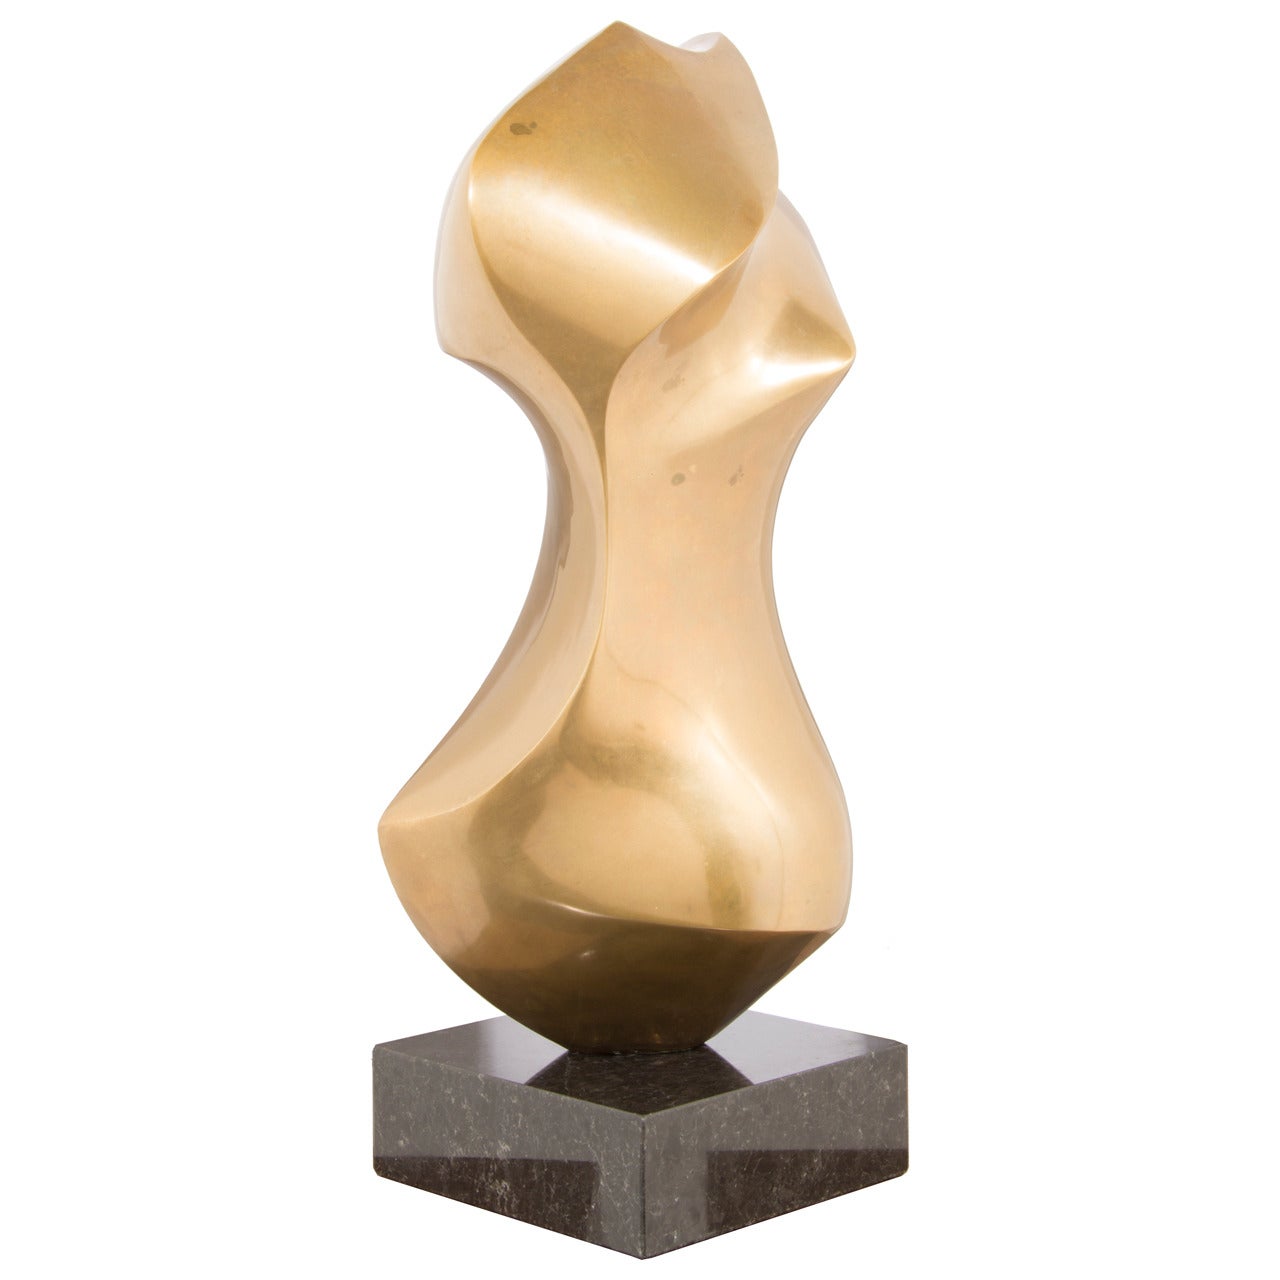 Antonio Grediaga Kieff Bronze "Torso" Sculpture